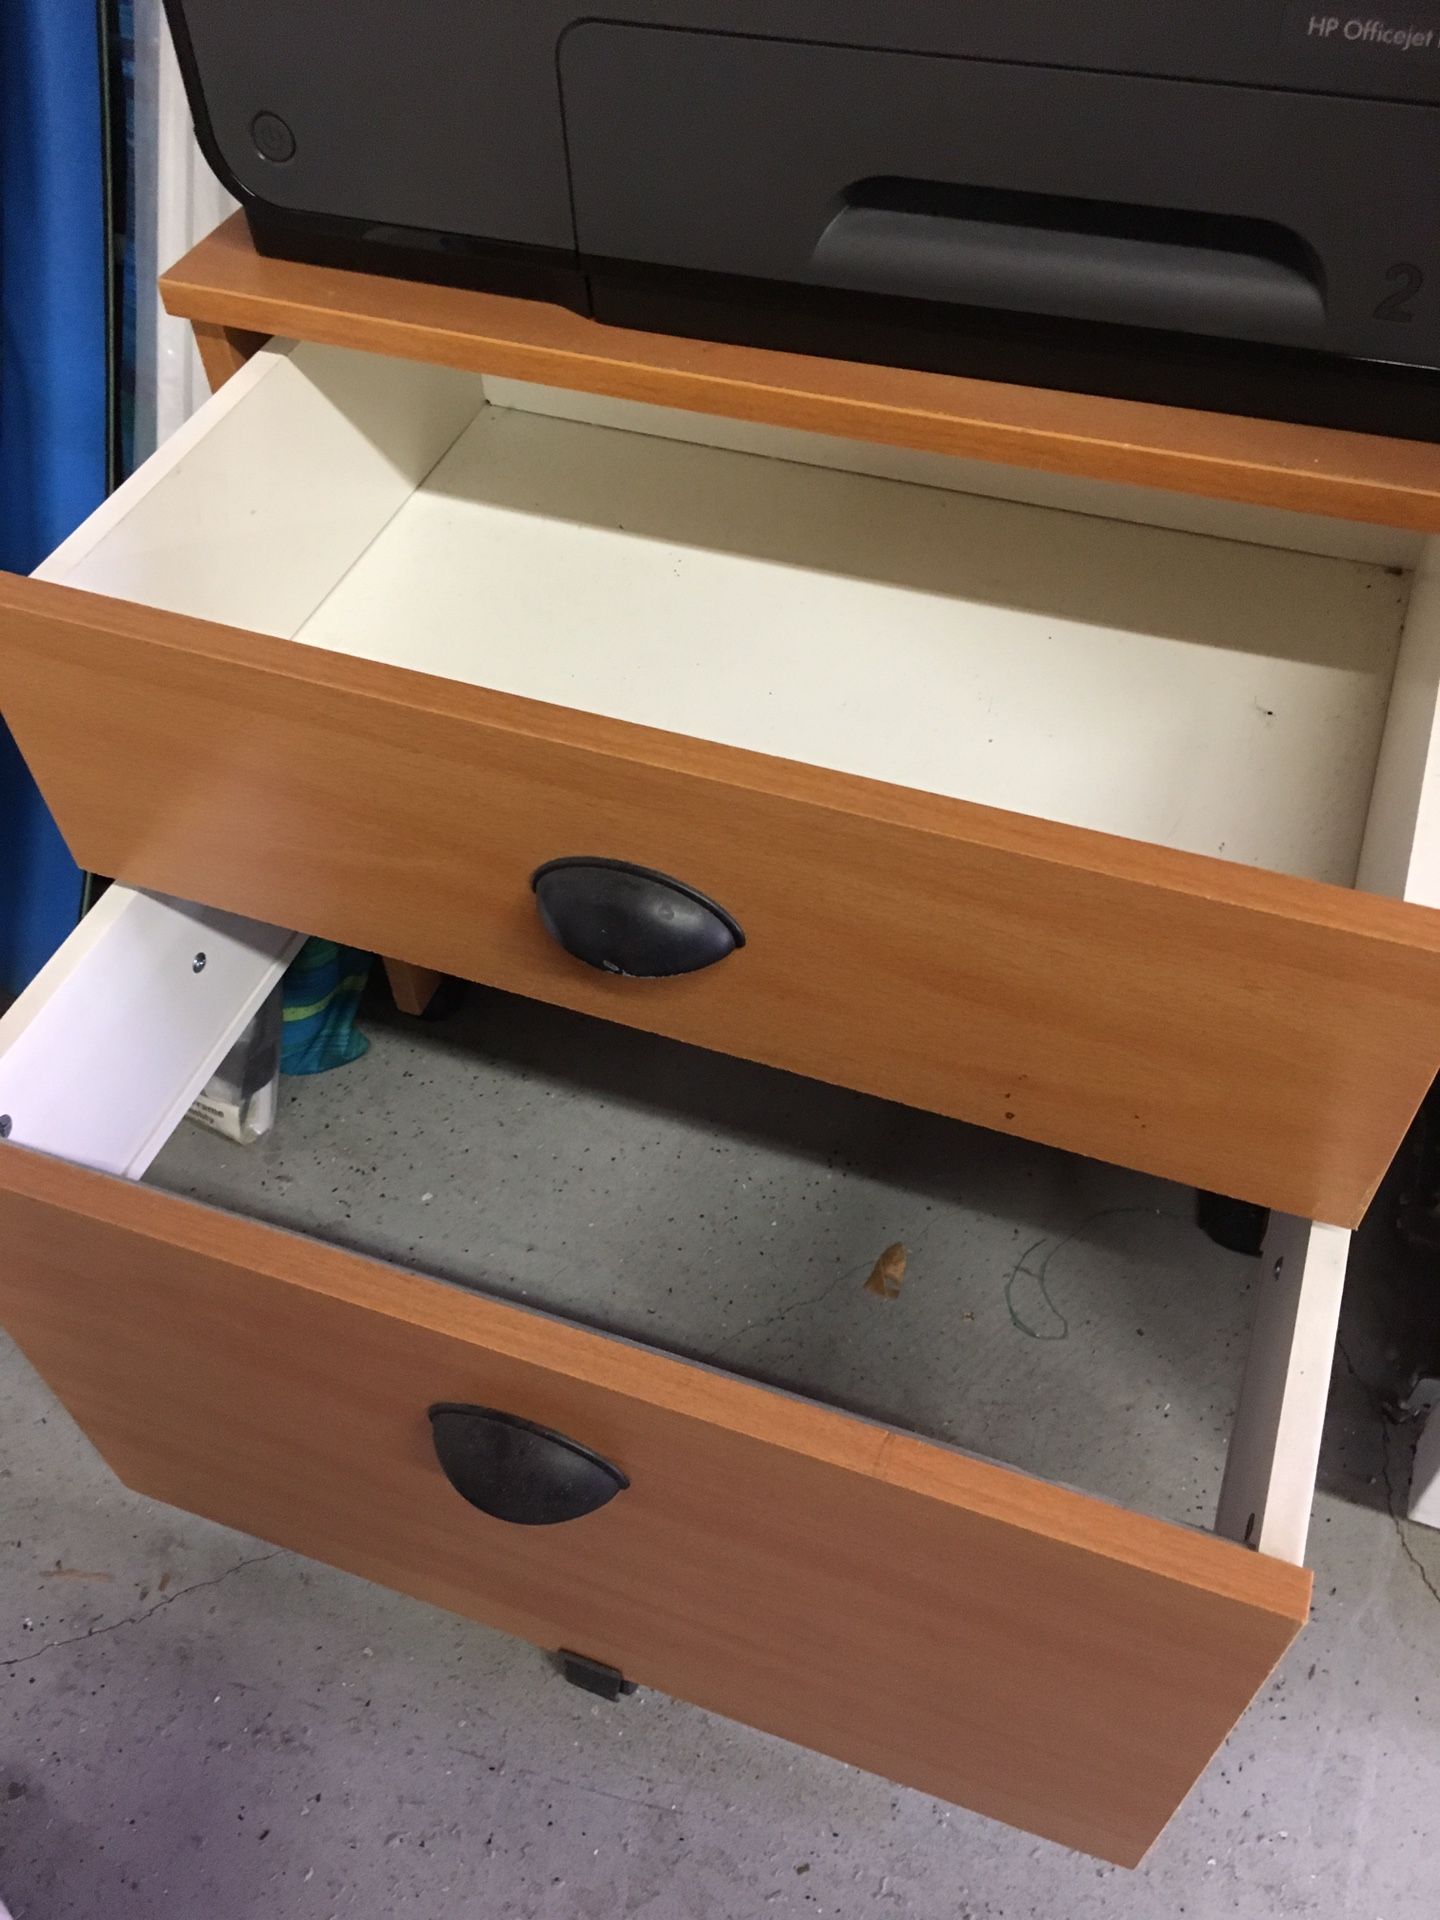 Printer stand/file cabinet